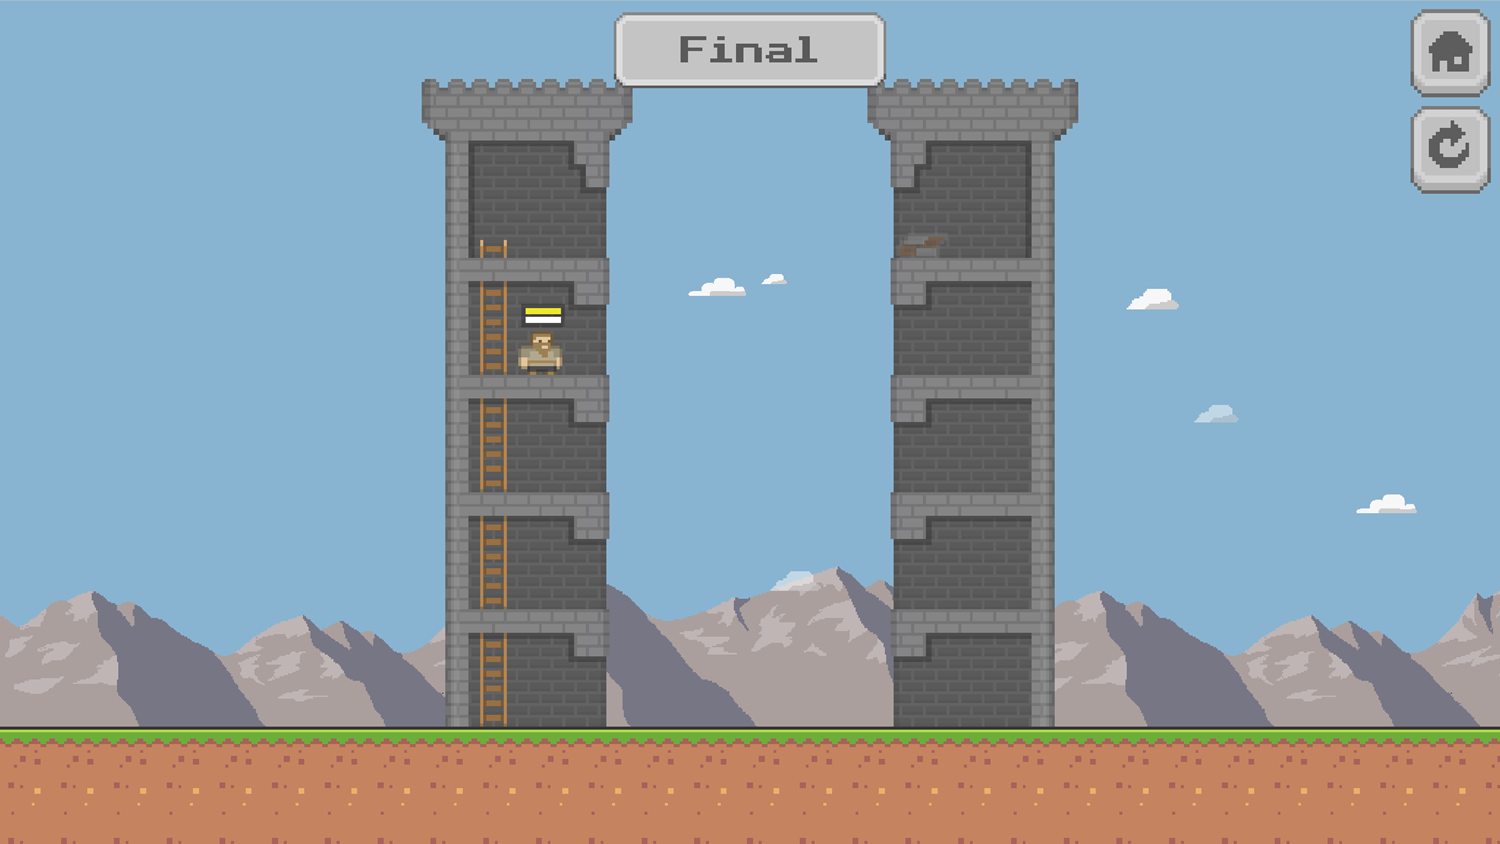 Pixel Tower Battle Game Final Level Beat Screenshot.